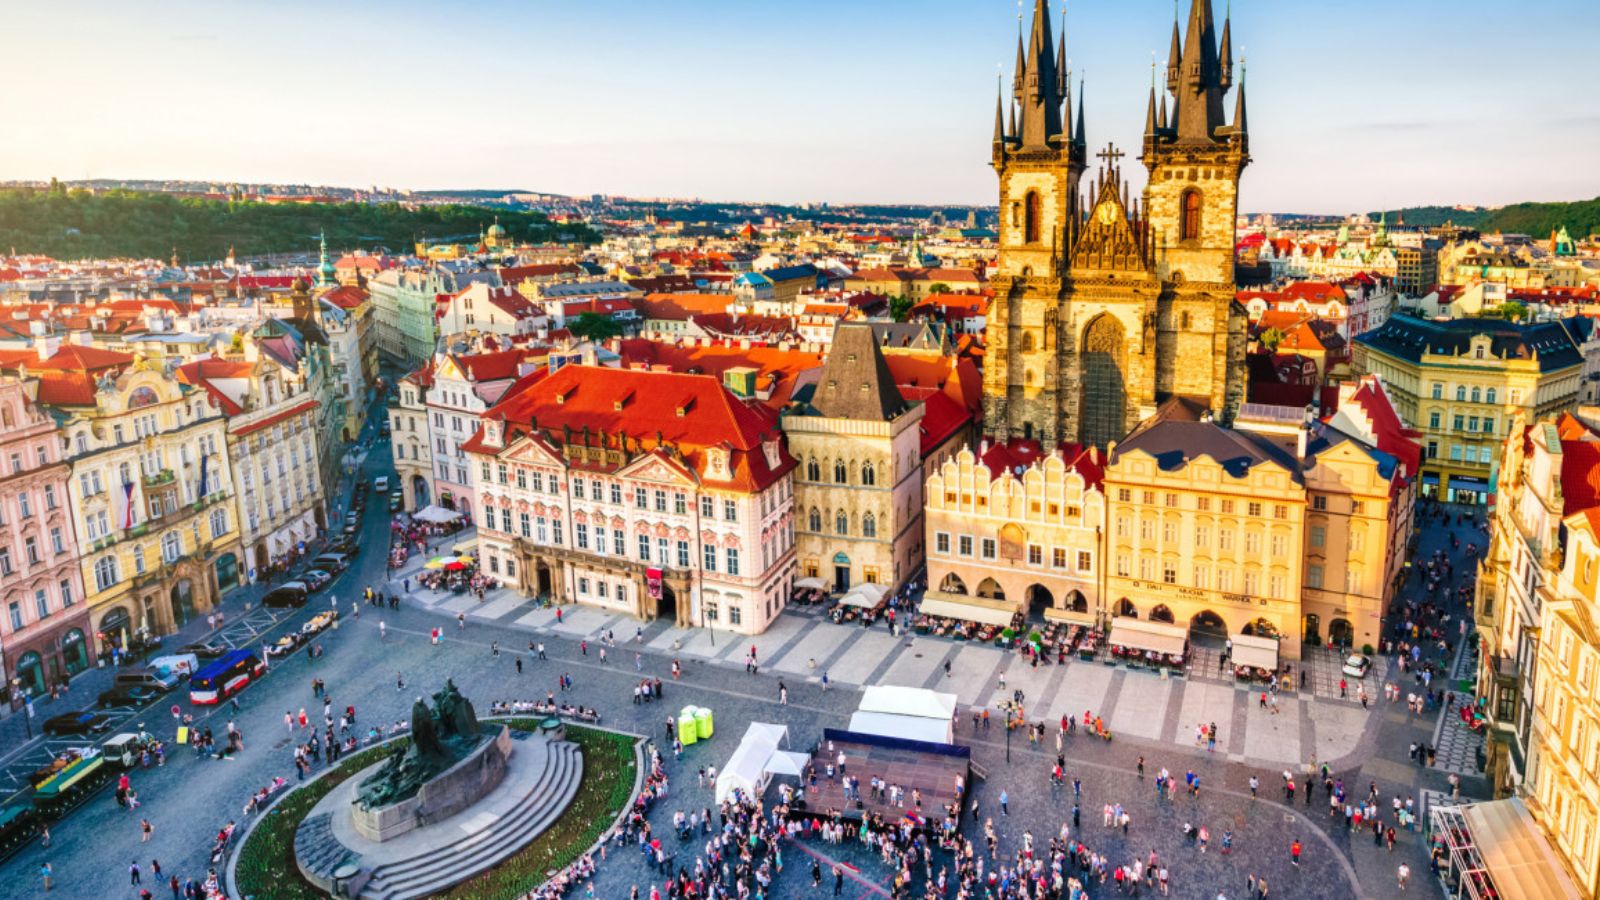 V Praze žije o 300 tisíc lidí více, než uvádějí oficiální statistiky